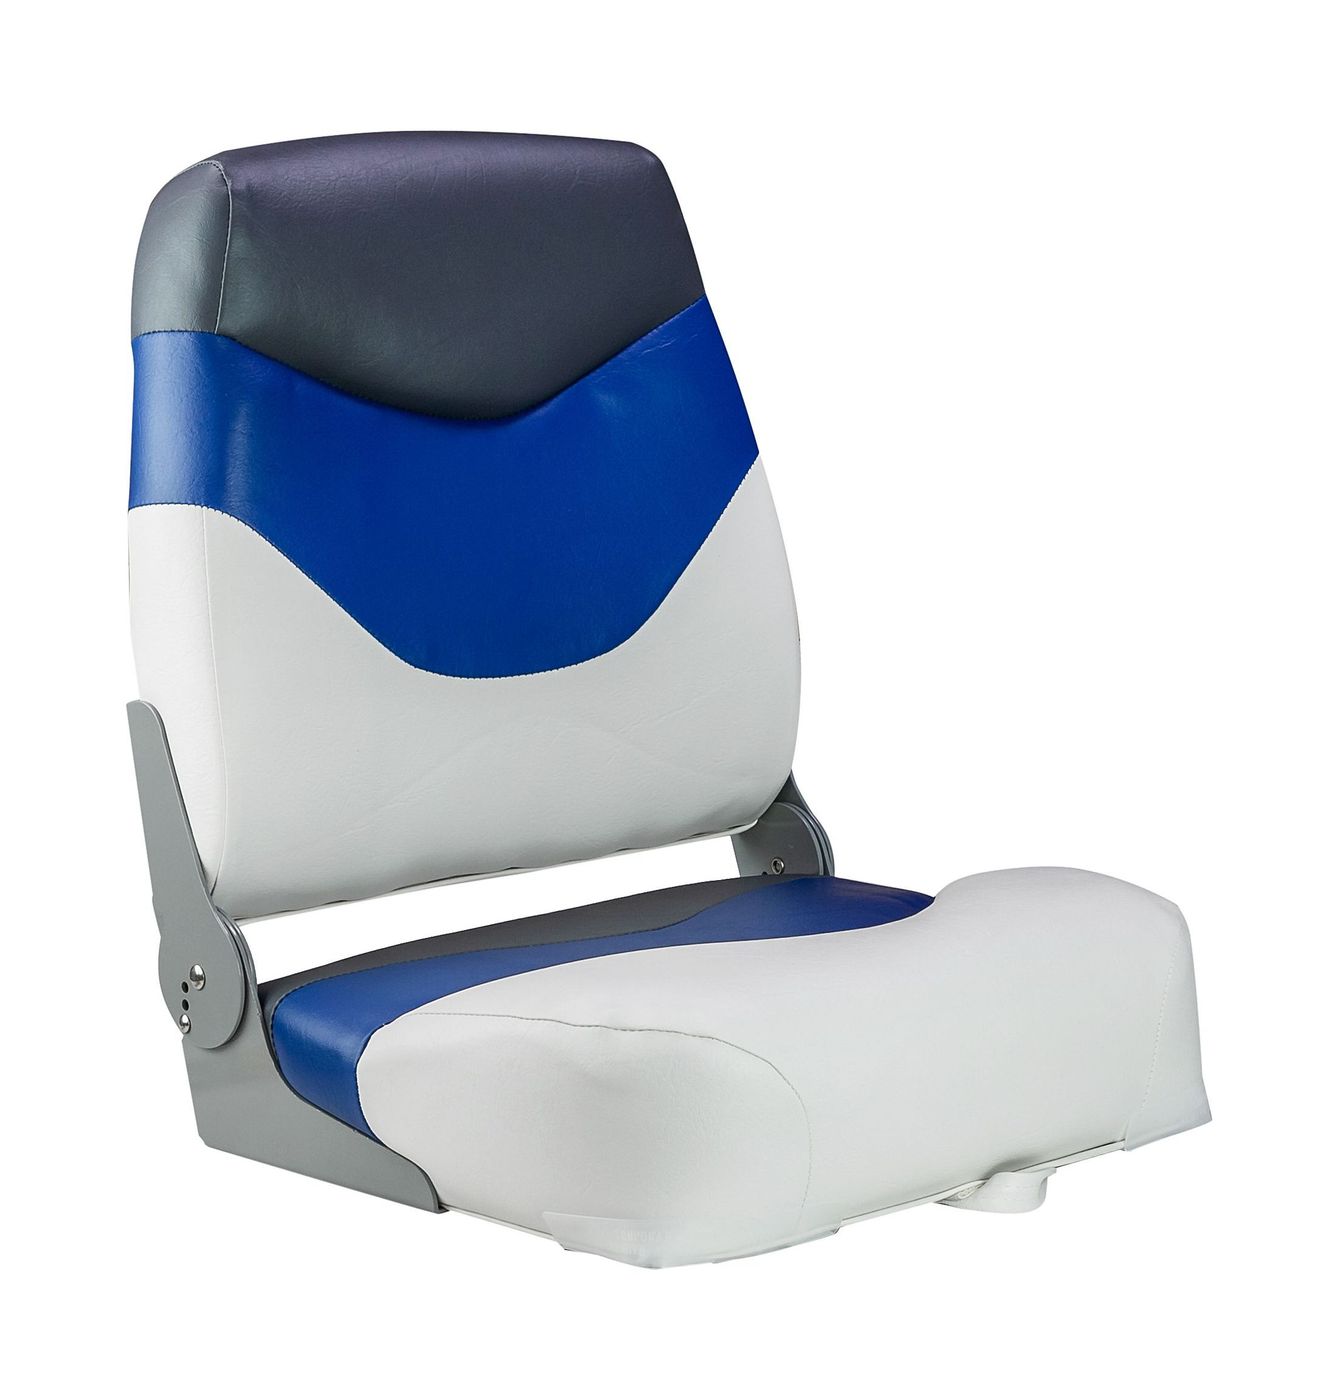 Кресло мягкое складное Premium, обивка винил, цвет белый/синий/угольный, Marine Rocket 75128WBC-MR